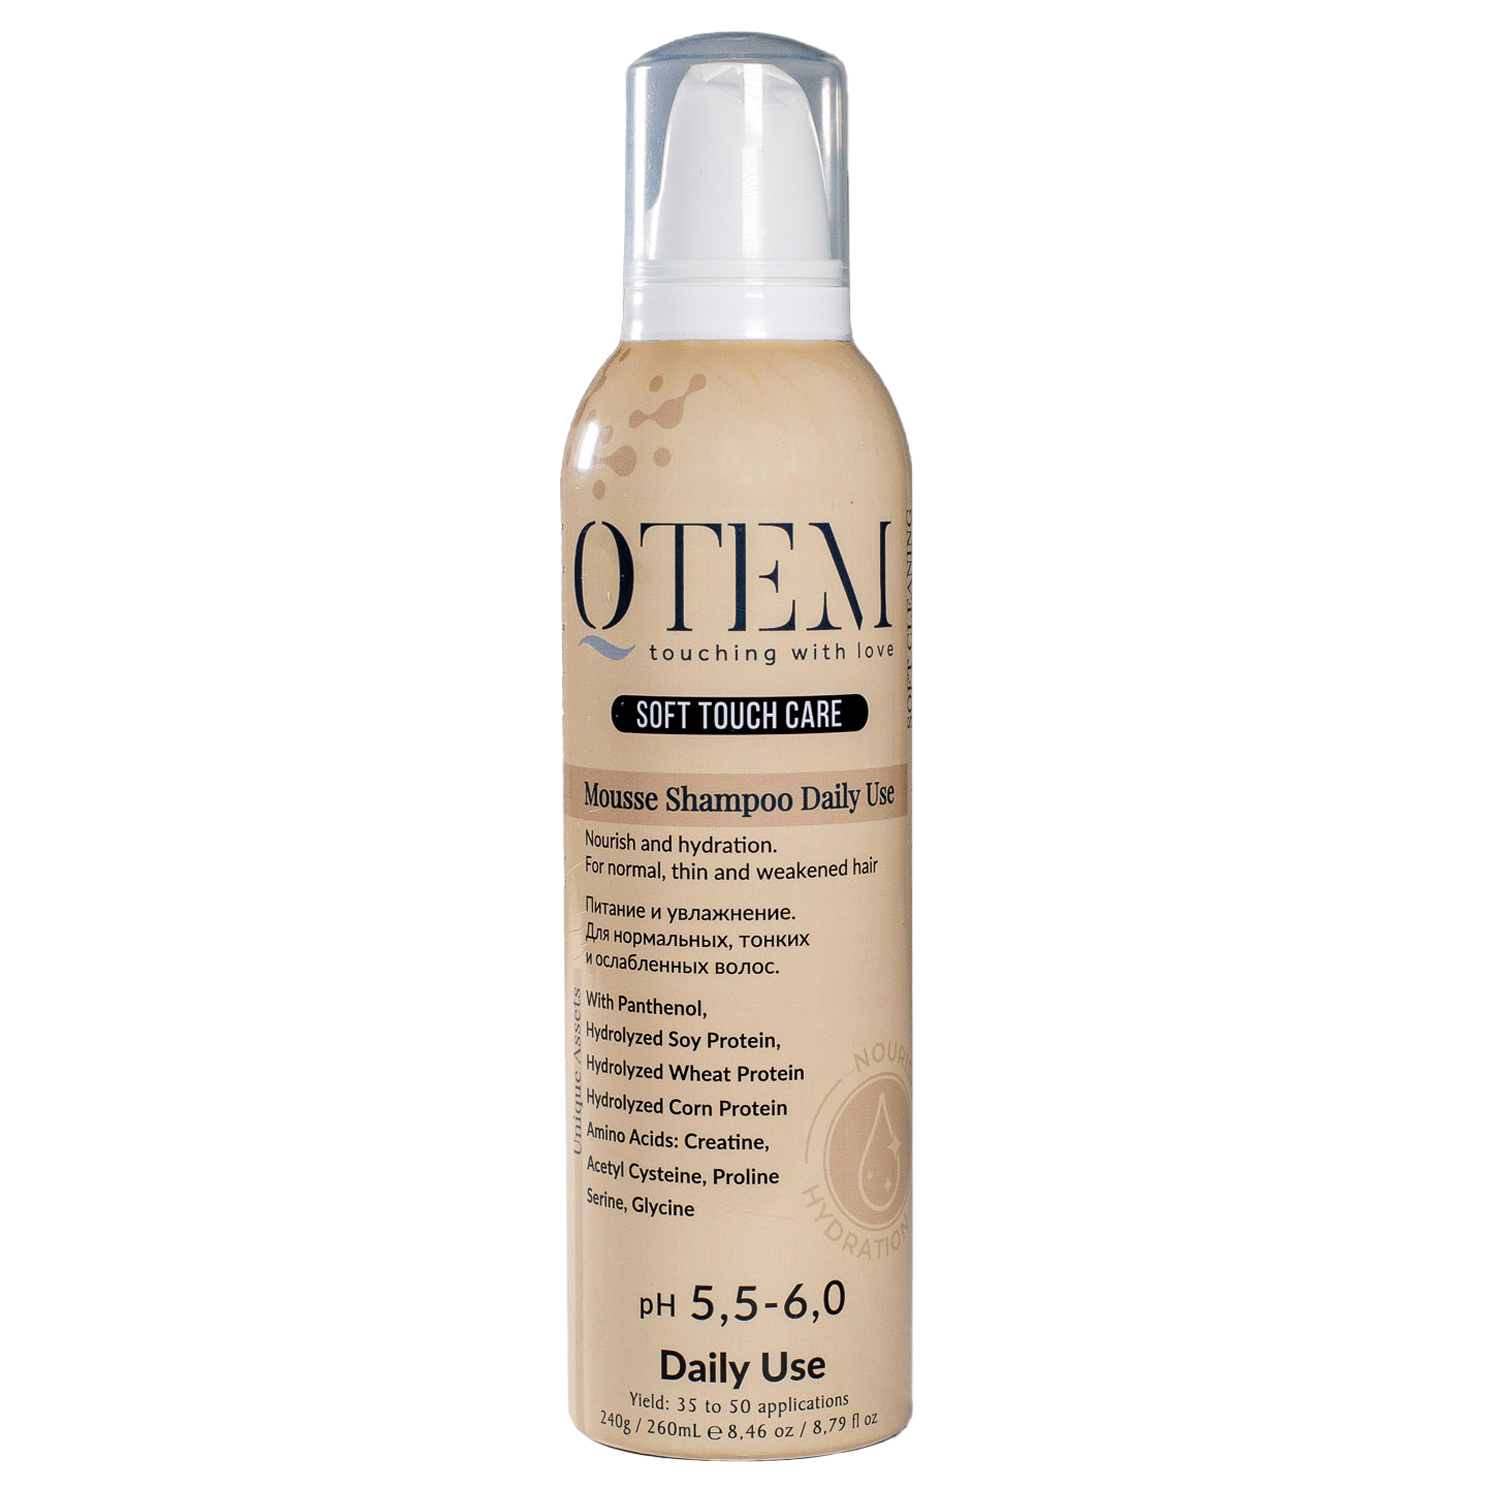 Qtem Протеиновый Мусс-шампунь для частого применения Питание и увлажнение нормальных, тонких и ослабленных волос, 260 мл (Qtem, Soft Touch Care)